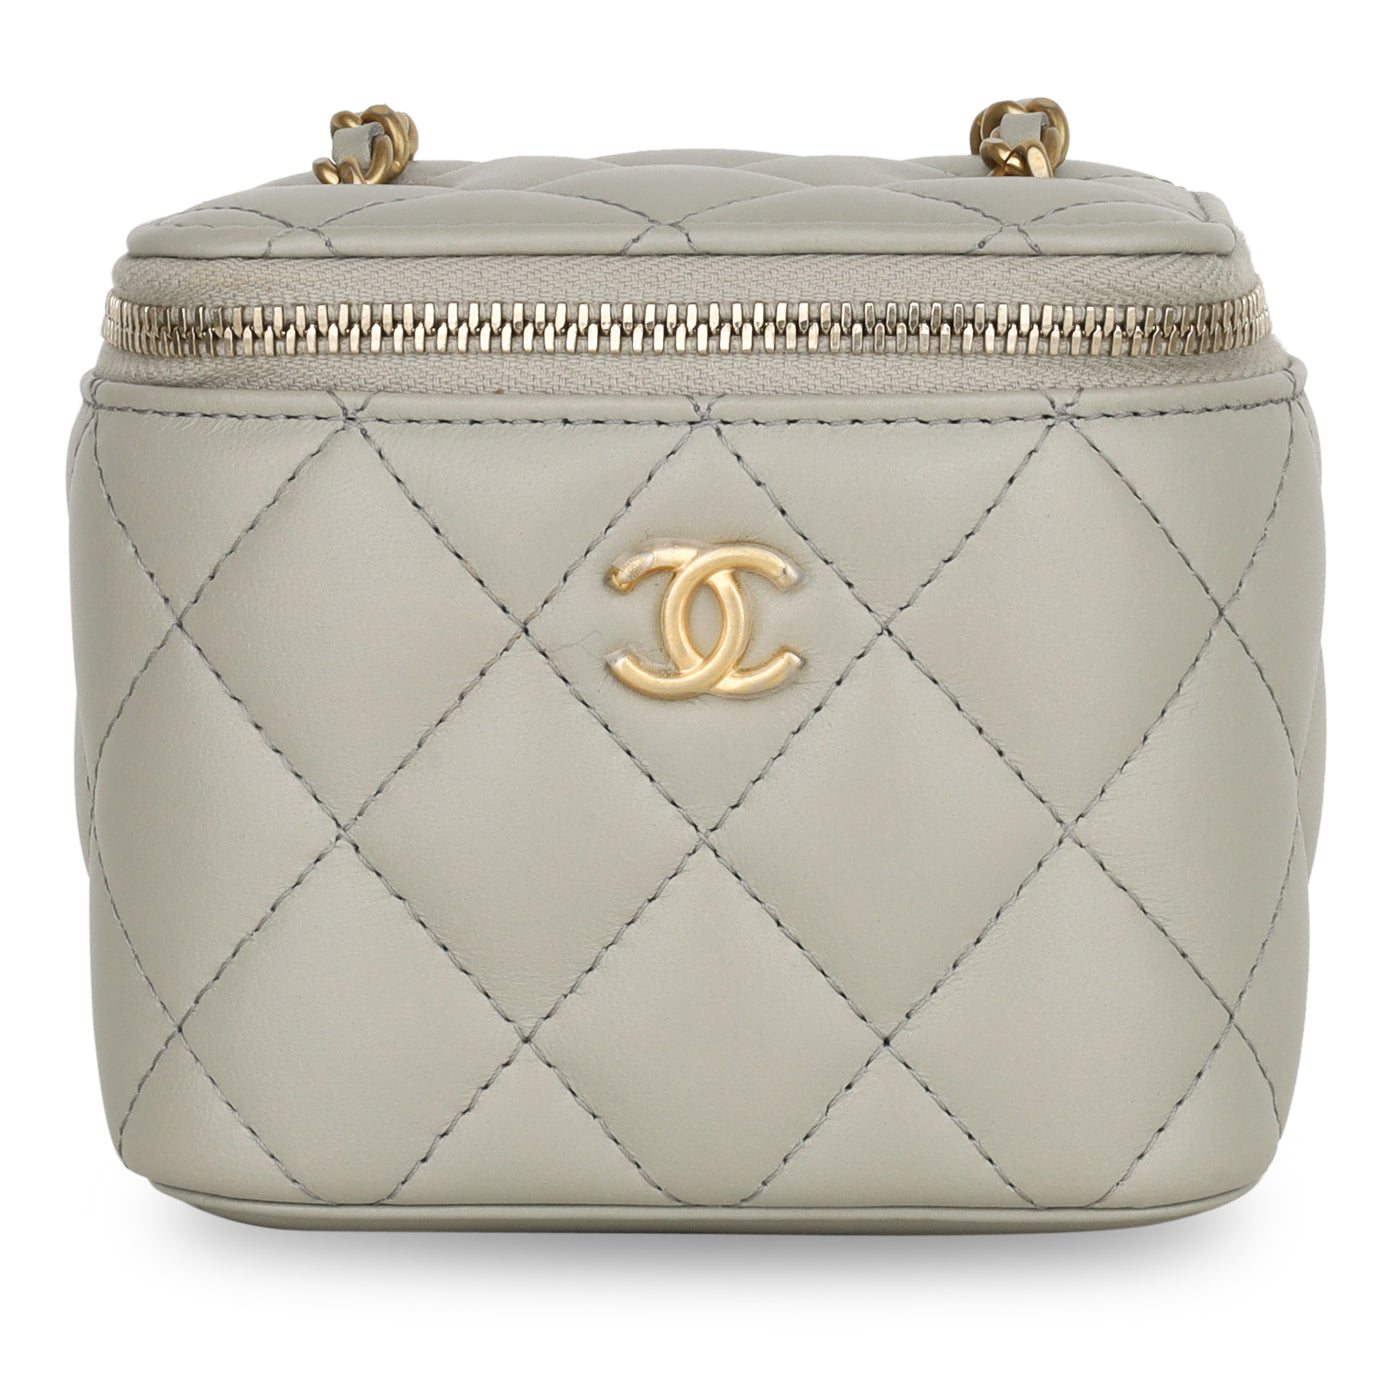 Chanel vanity case bag  diorellame